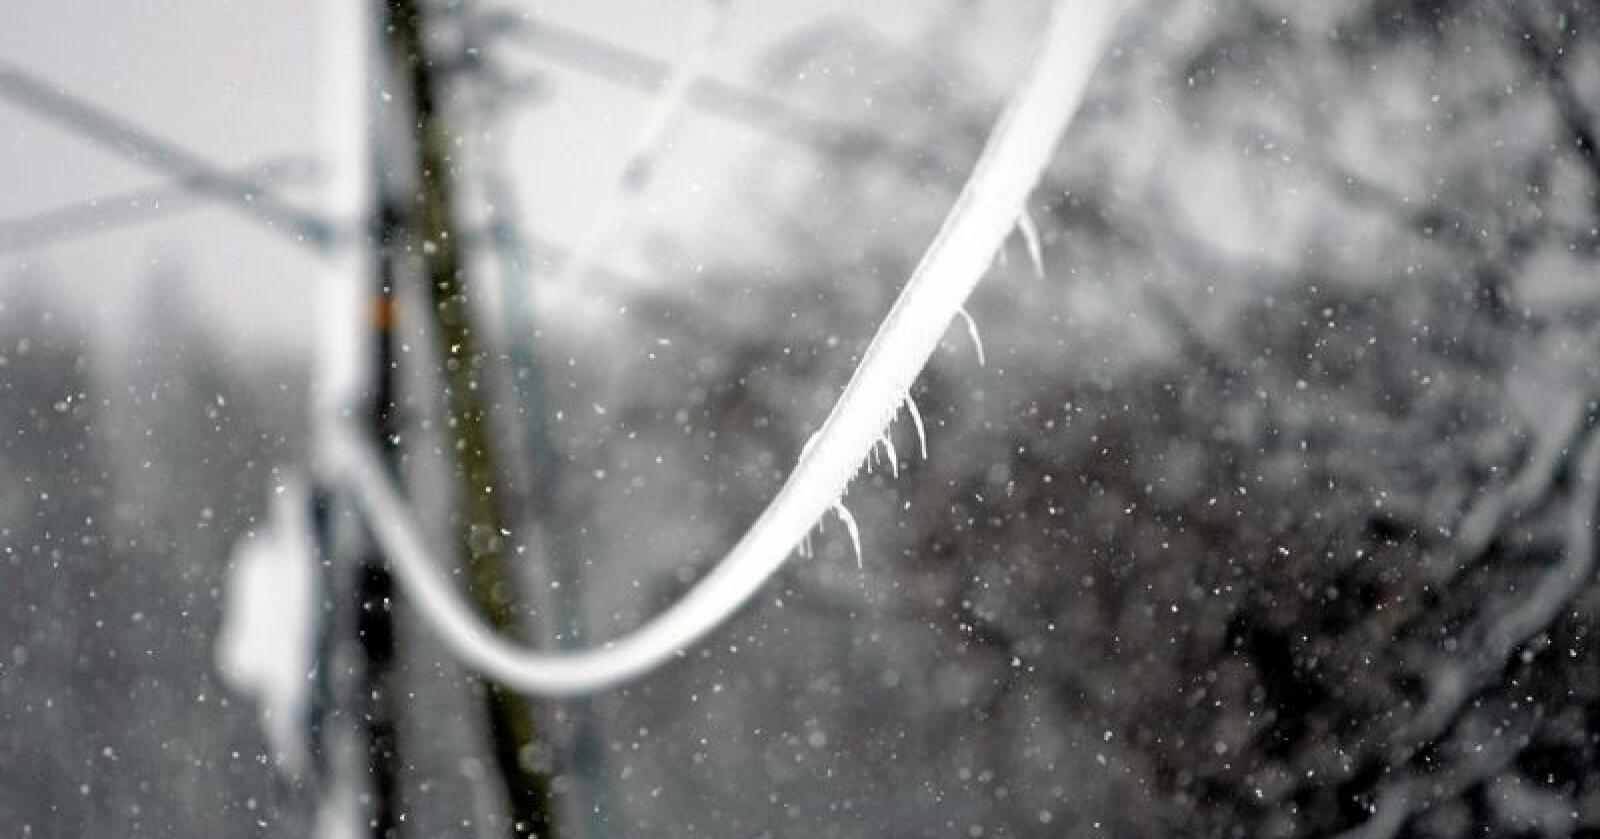 Det slokner i stille grender: Snø og is kan være nok til å bryte strømmen på en vinternatt. Foto: Tor Erik Schrøder / NTB Scanpix